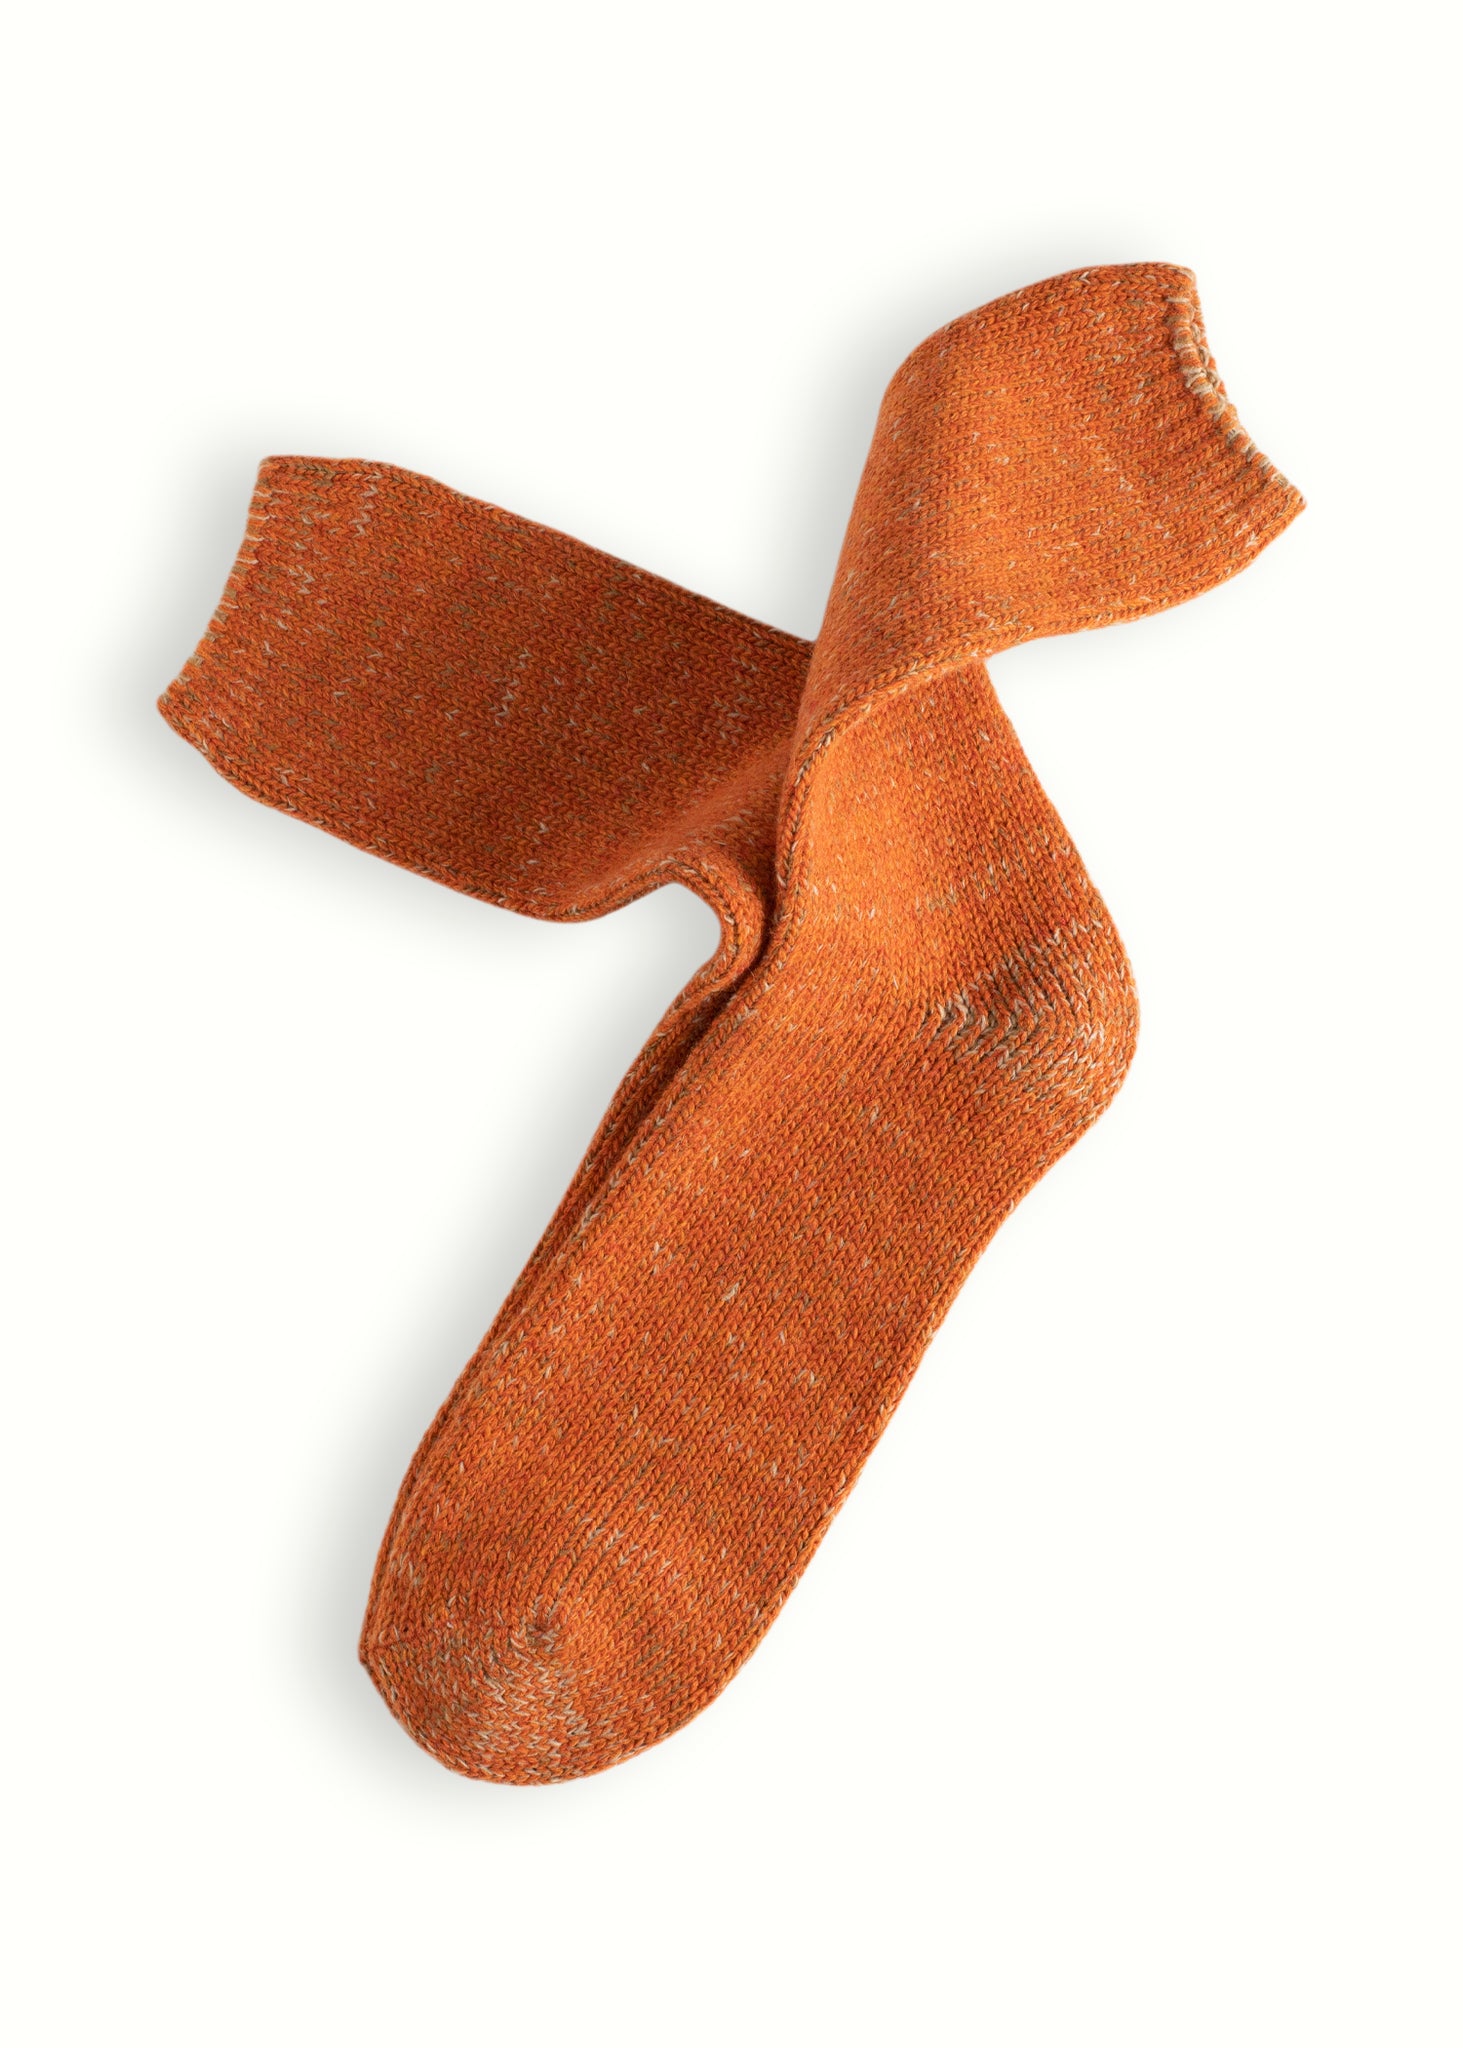 Thunders Love Wool Recycled Orange Socks